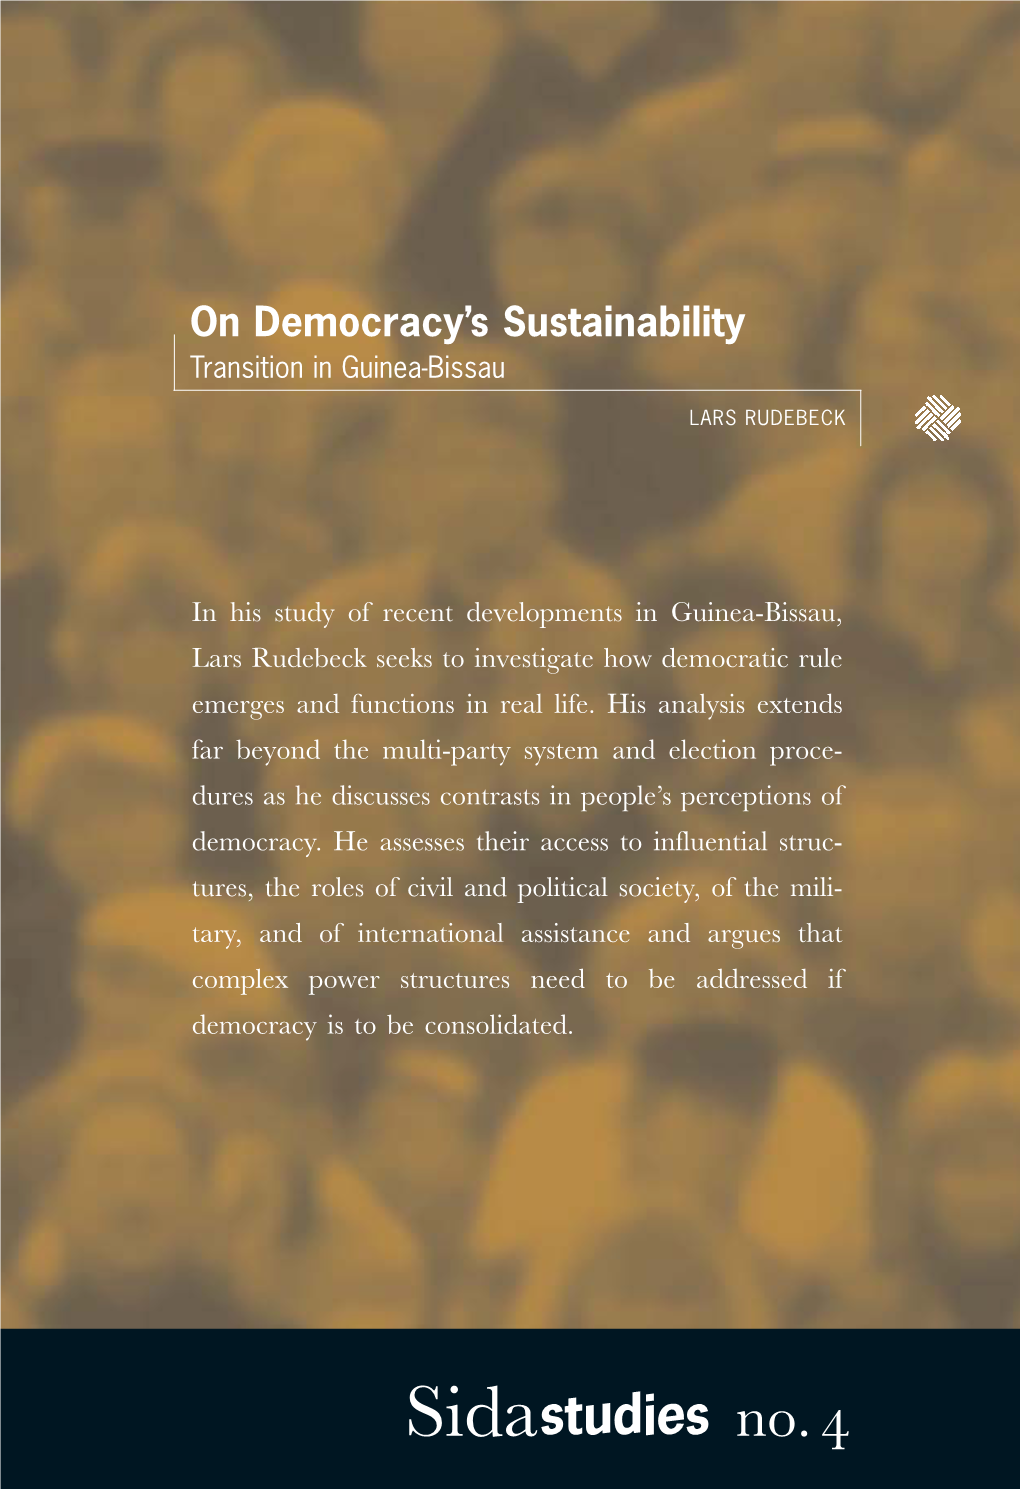 On Democracy's Sustainability